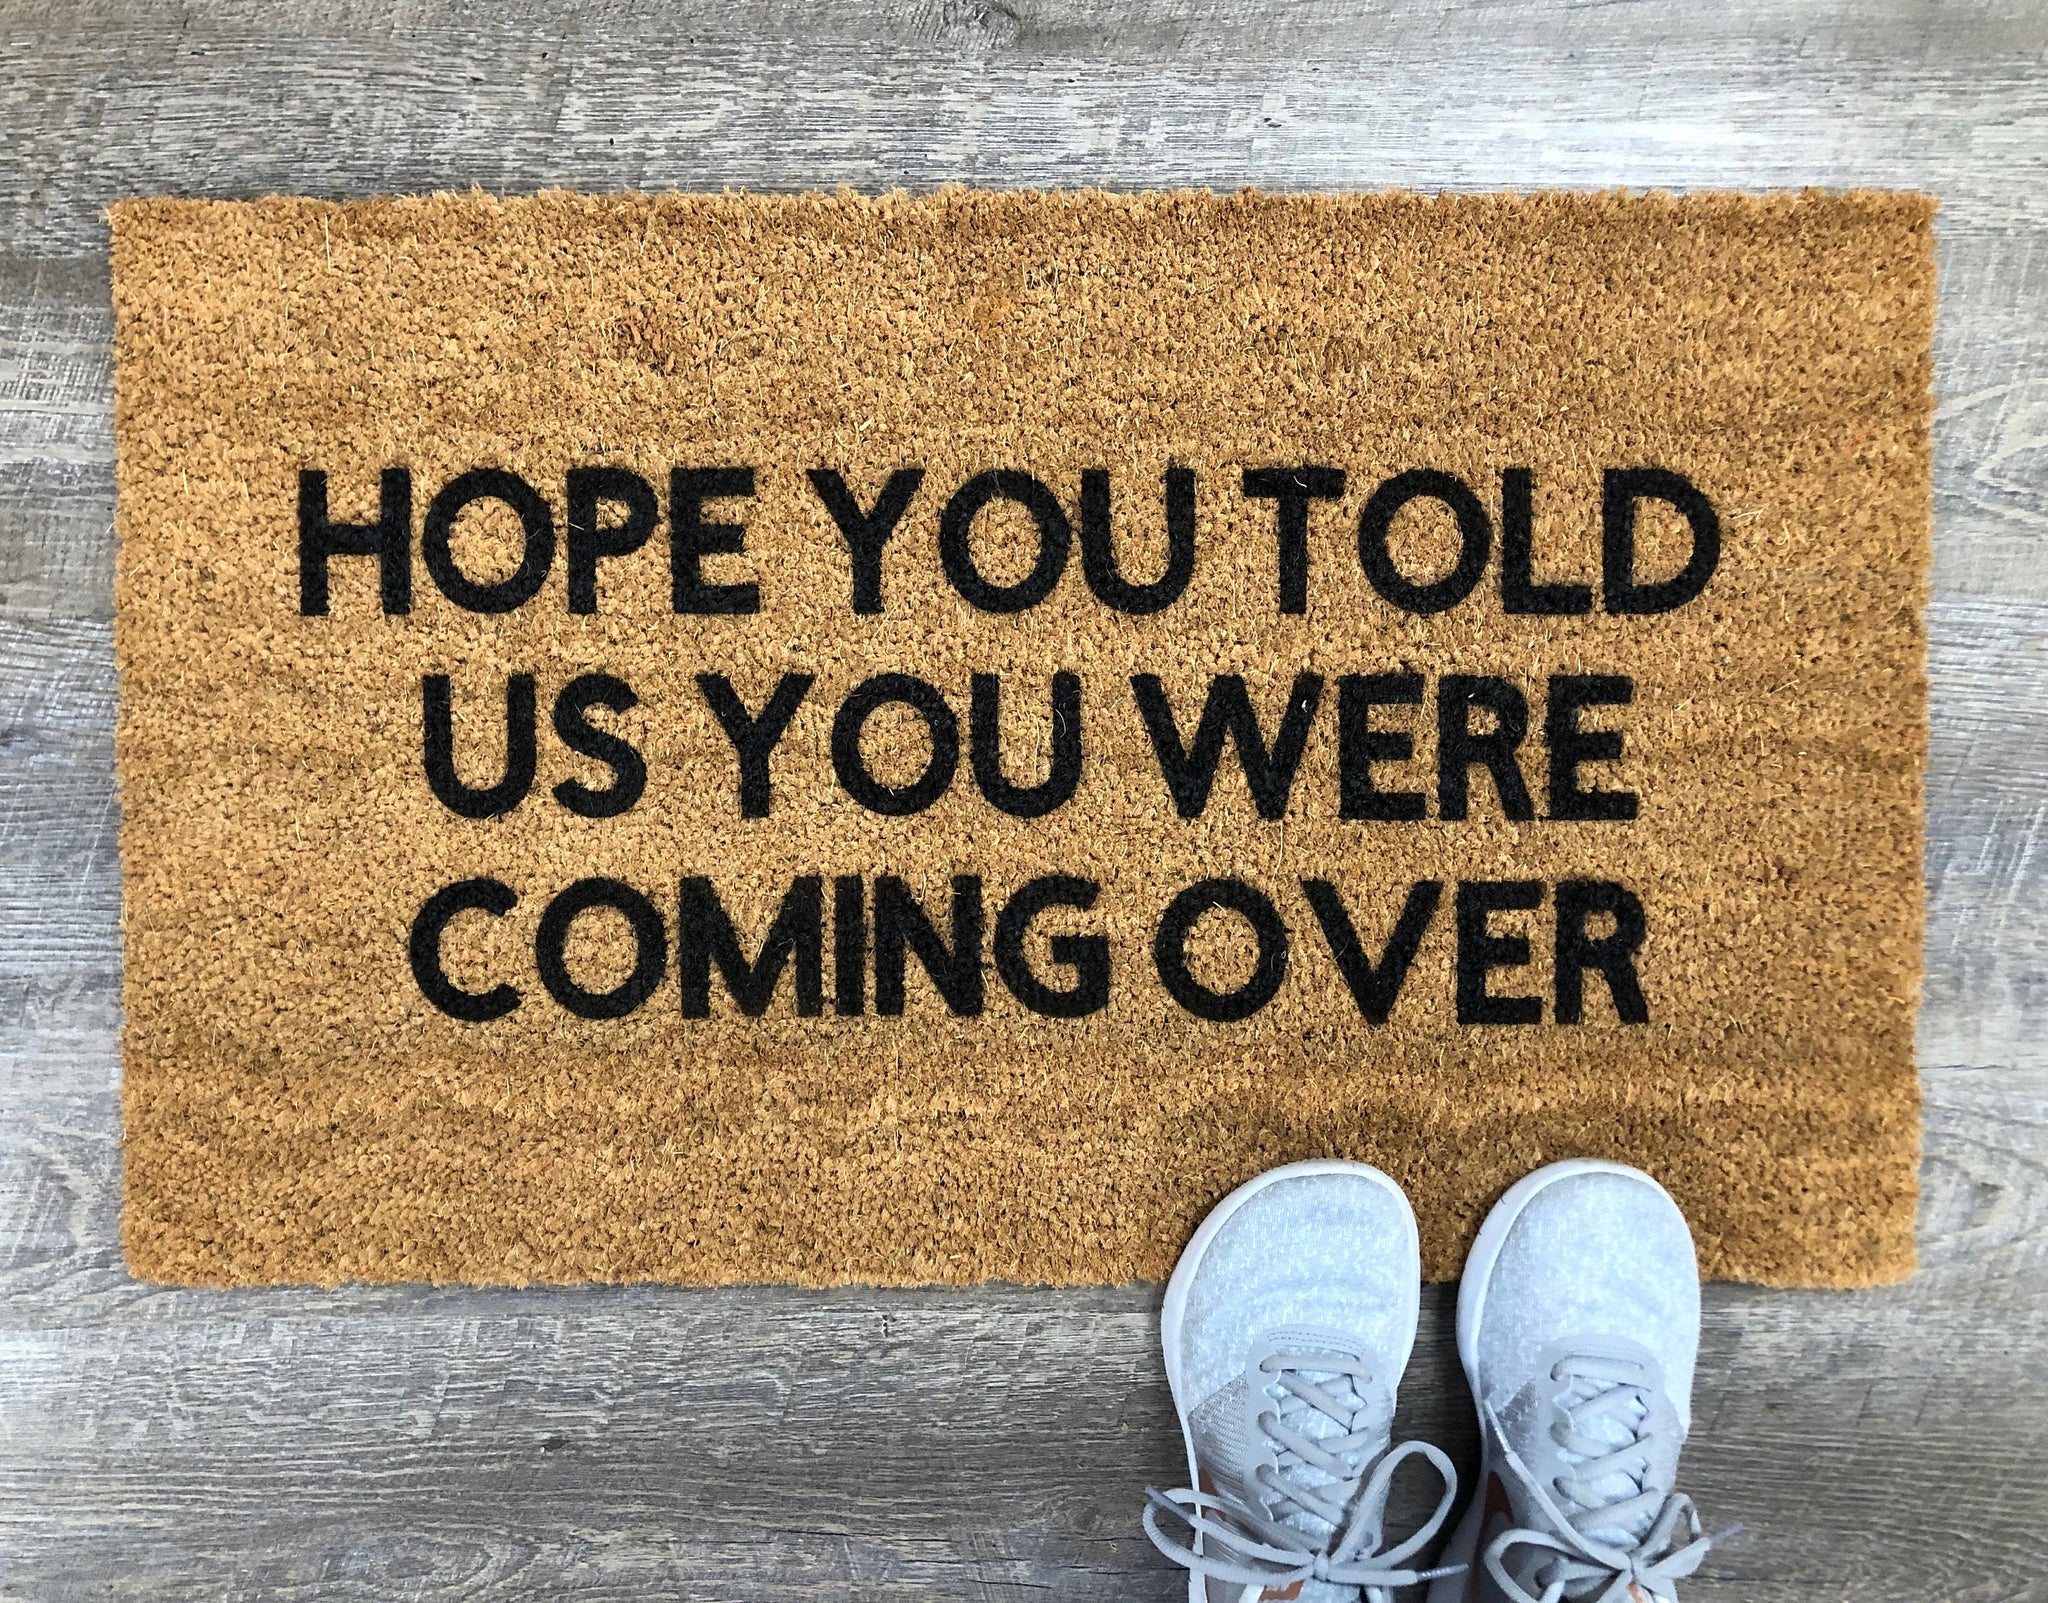 Hope You Told Us You Were Coming Over, Custom Doormat, Door mat